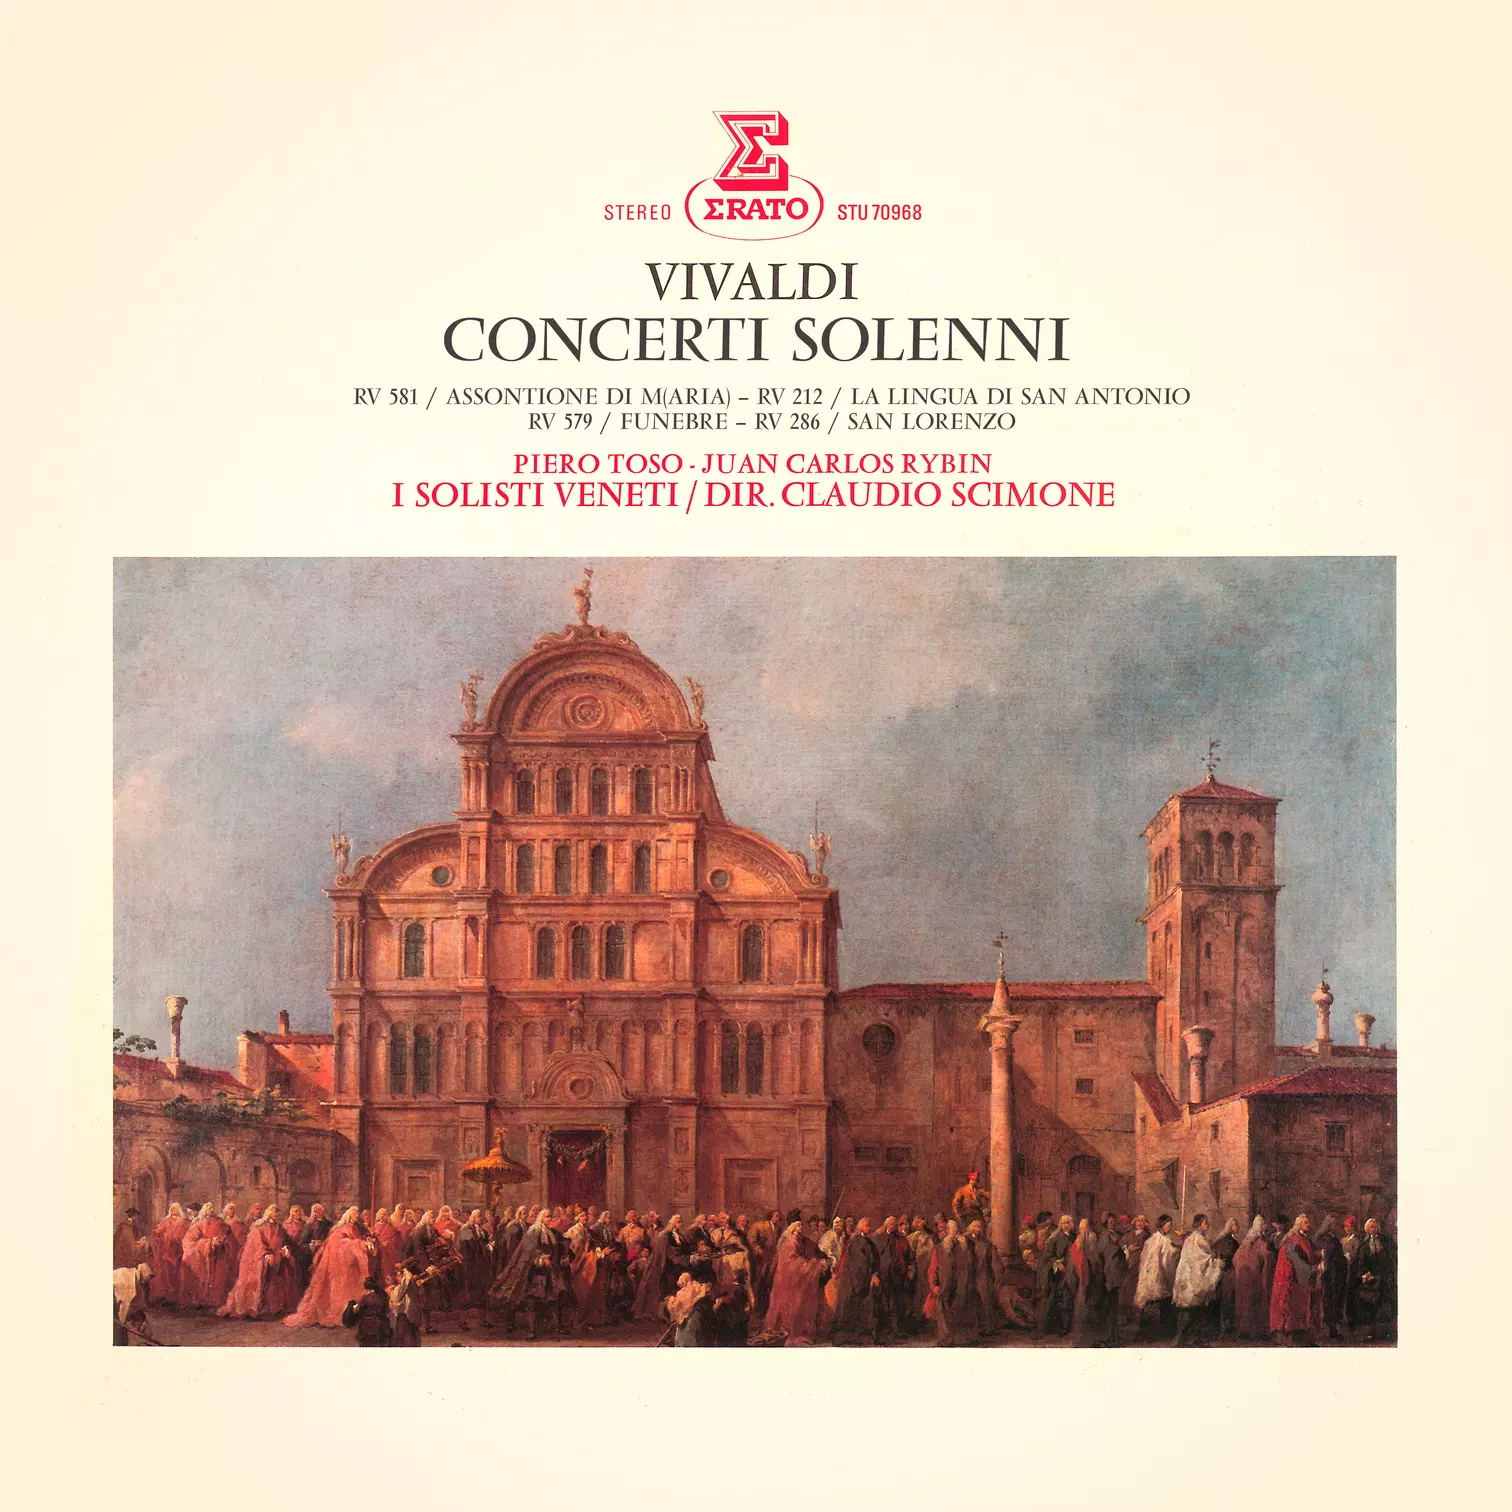 Vivaldi: Concerti solenni, RV 212, 286, 556, 579 & 581